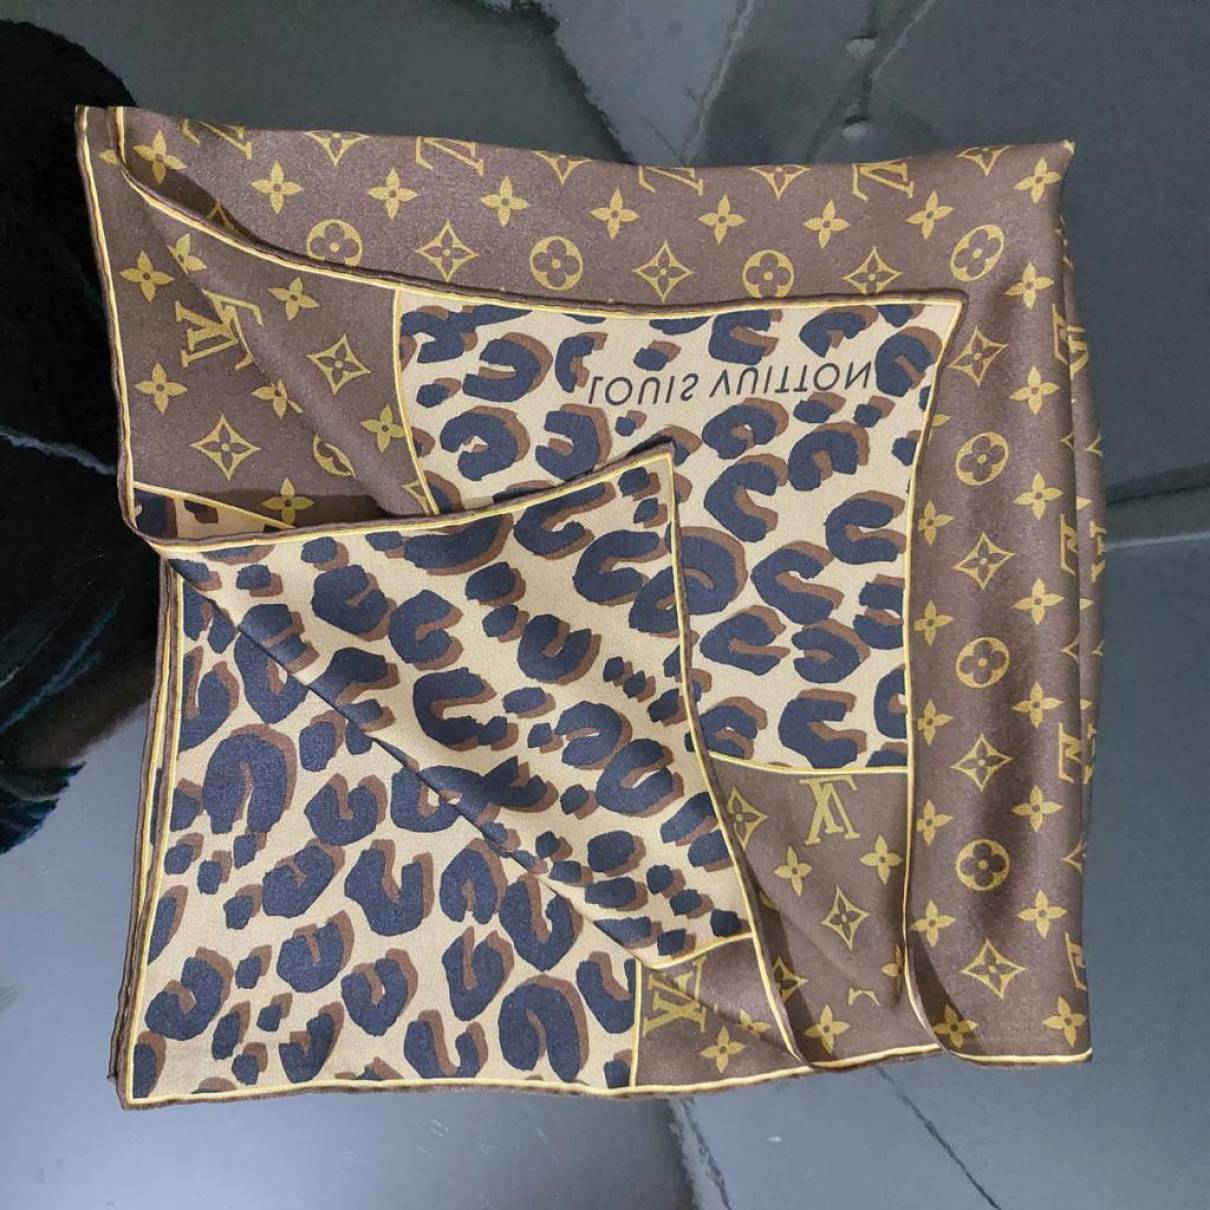 Silk neckerchief Louis Vuitton Brown in Silk - 29787888